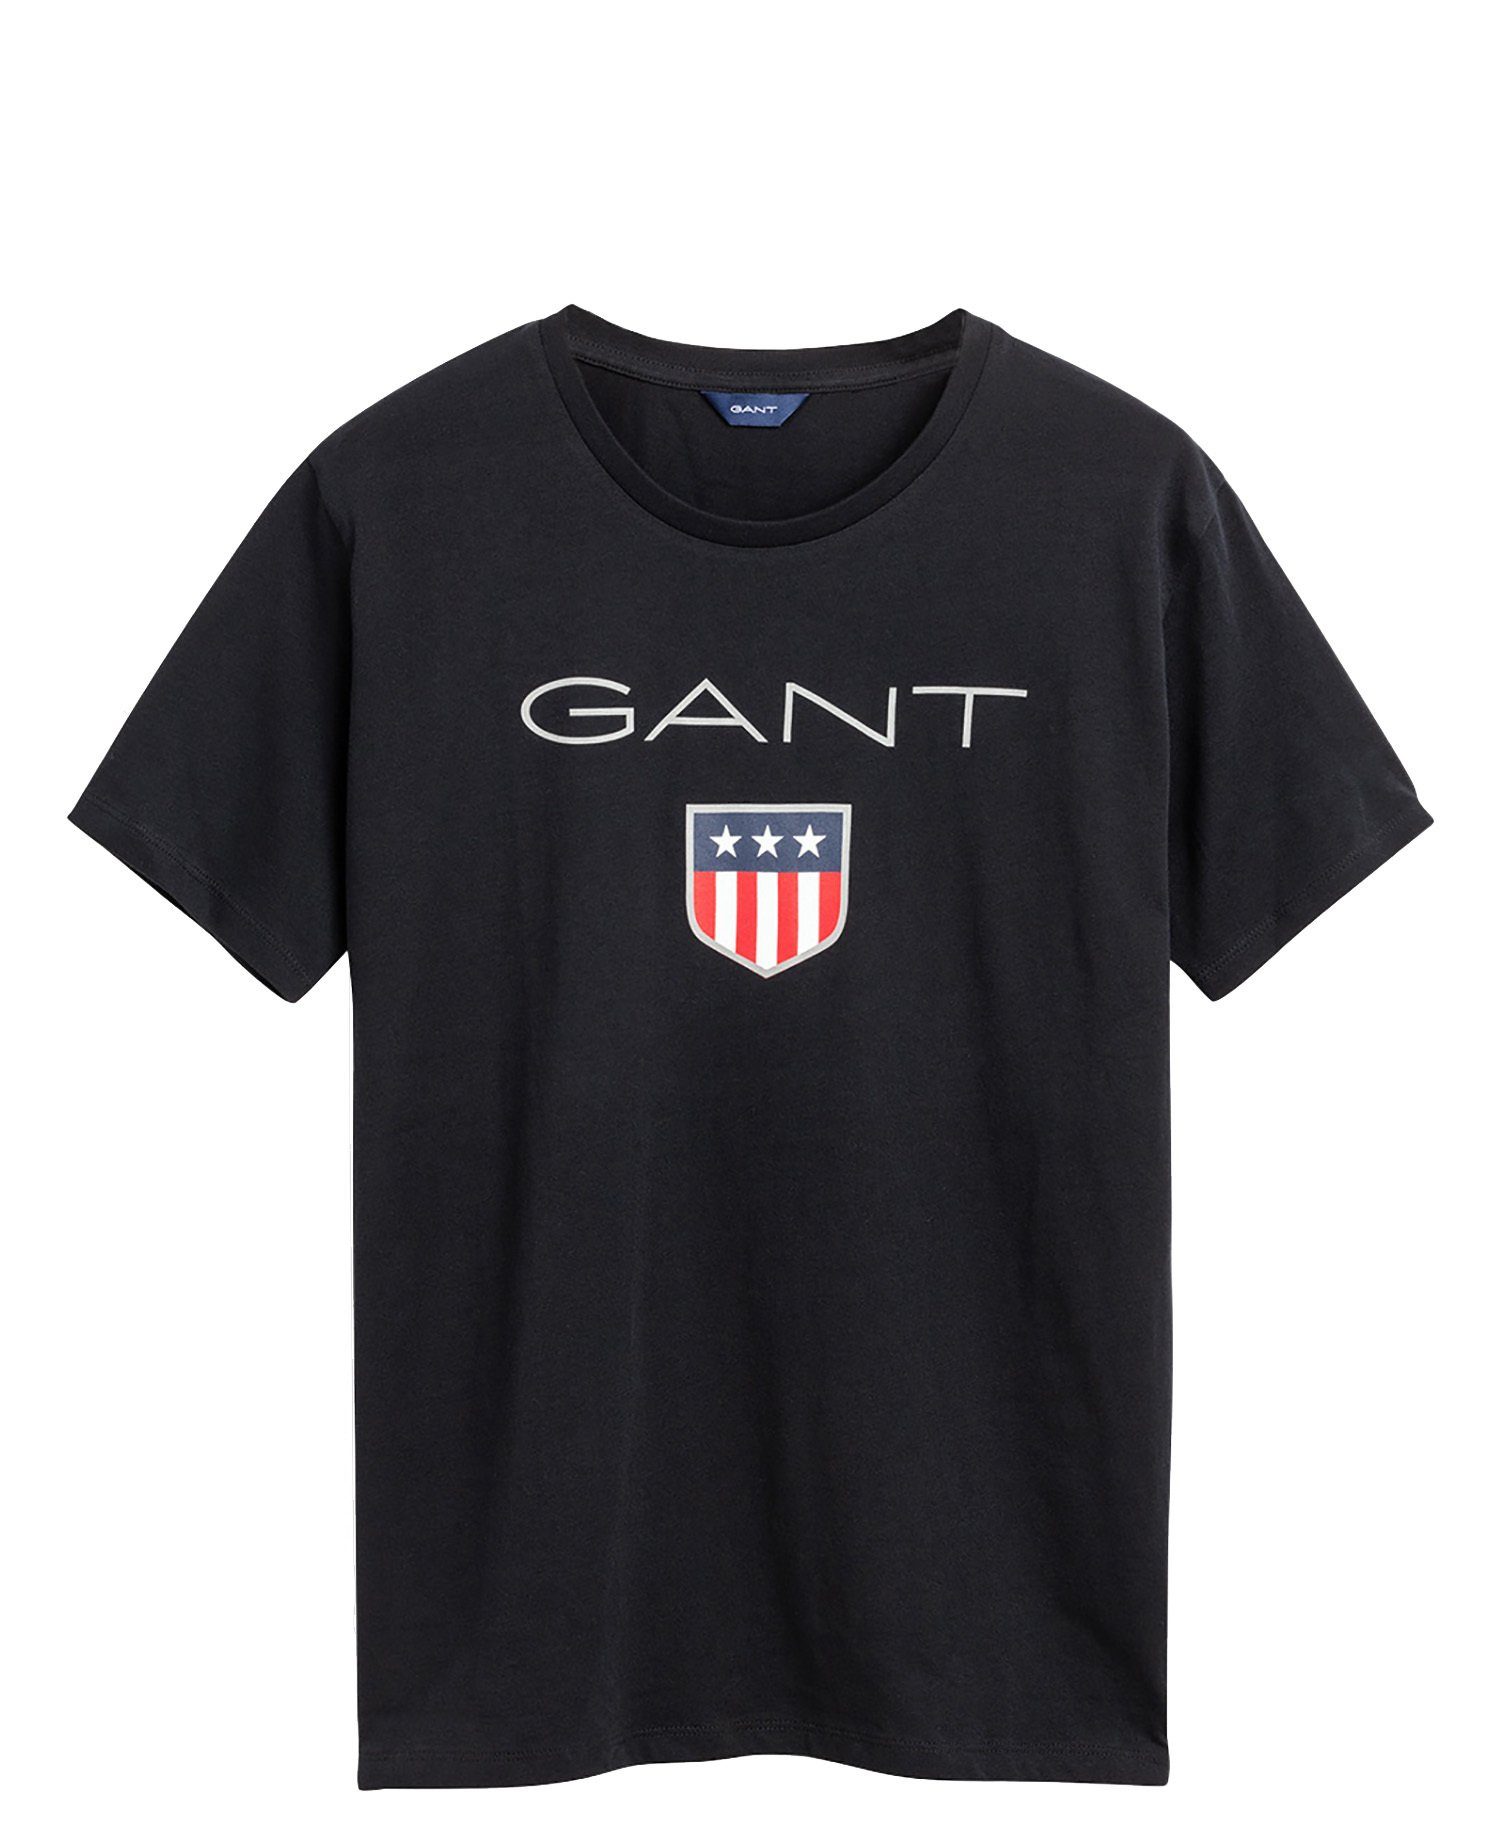 Teen Kurzarm Logo, Gant T-Shirt T-Shirt Schwarz Jungen Boys - SHIELD